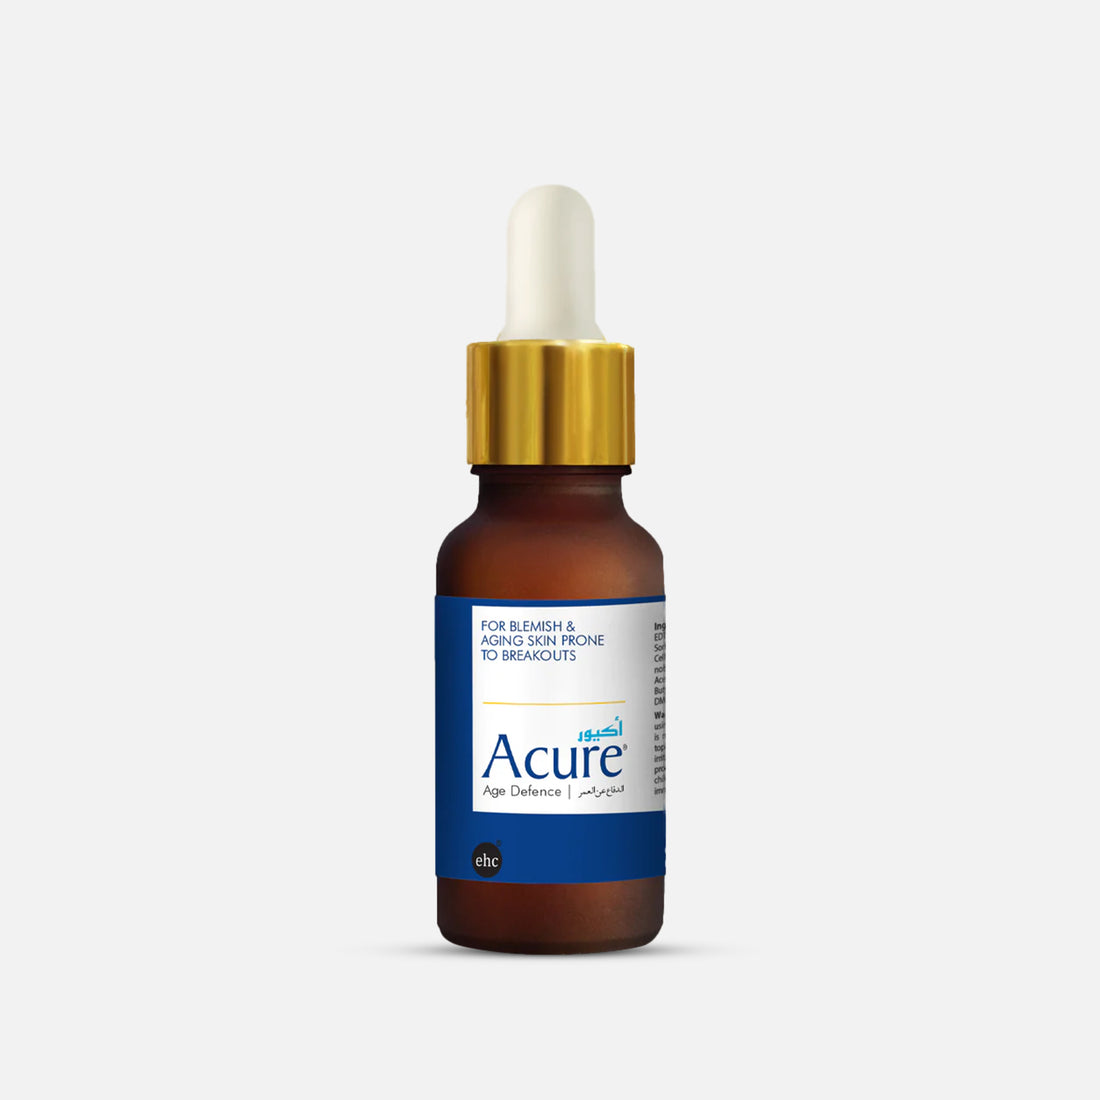 Acure Serum | Essential Health Care (EHC)